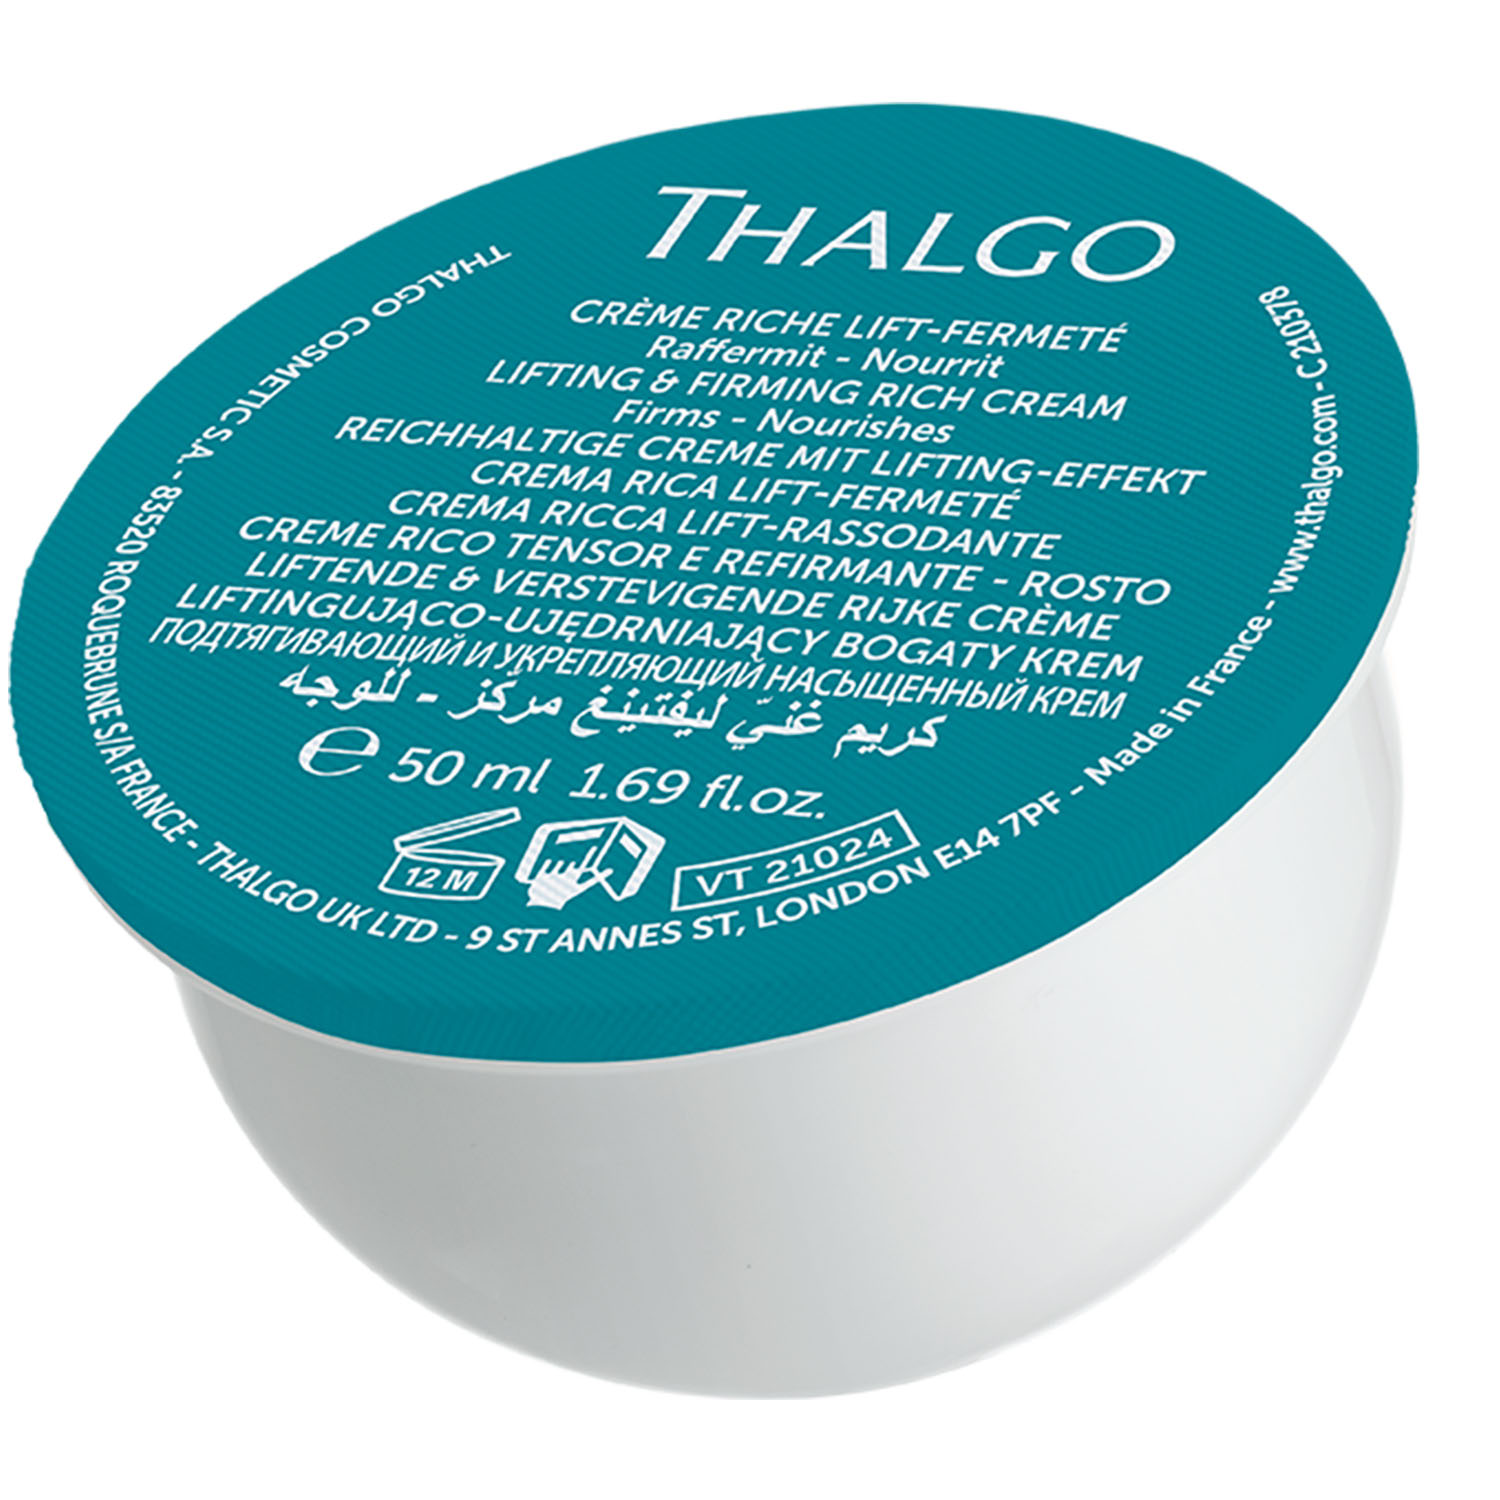 Thalgo Подтягивающий и укрепляющий насыщенный крем, сменный блок 50 мл (Thalgo, Silicium Lift) цена и фото